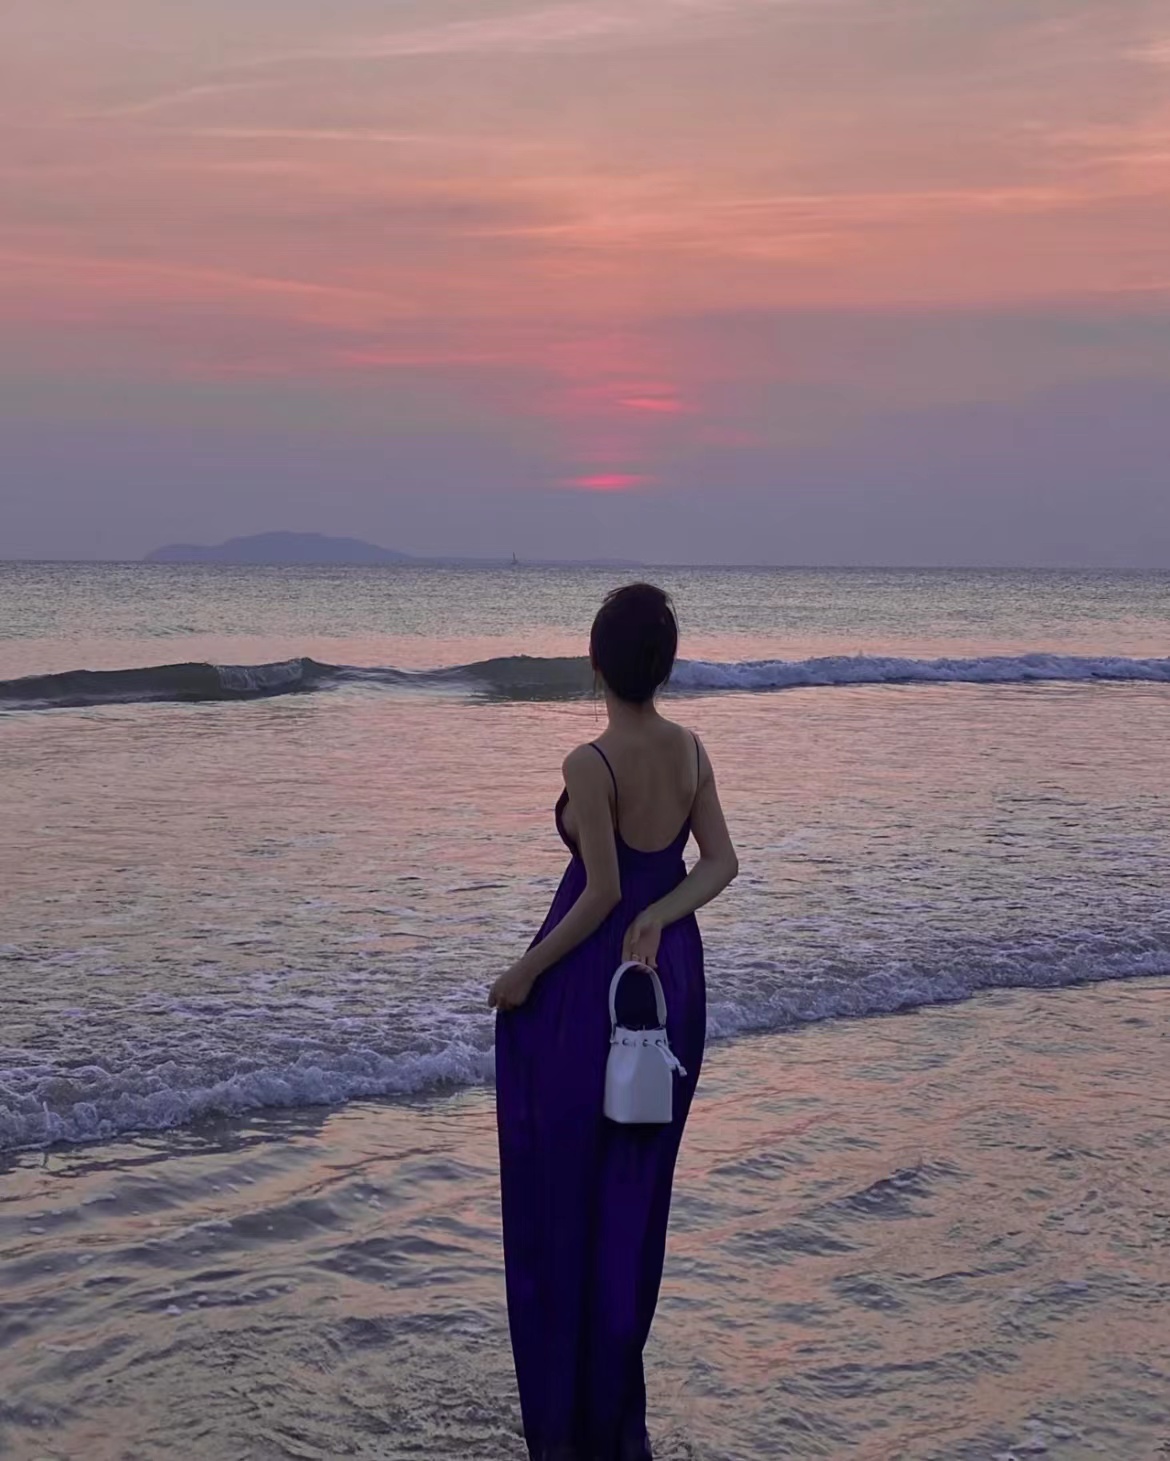 海边气质美女背影头像,女人孤独站在海边背影